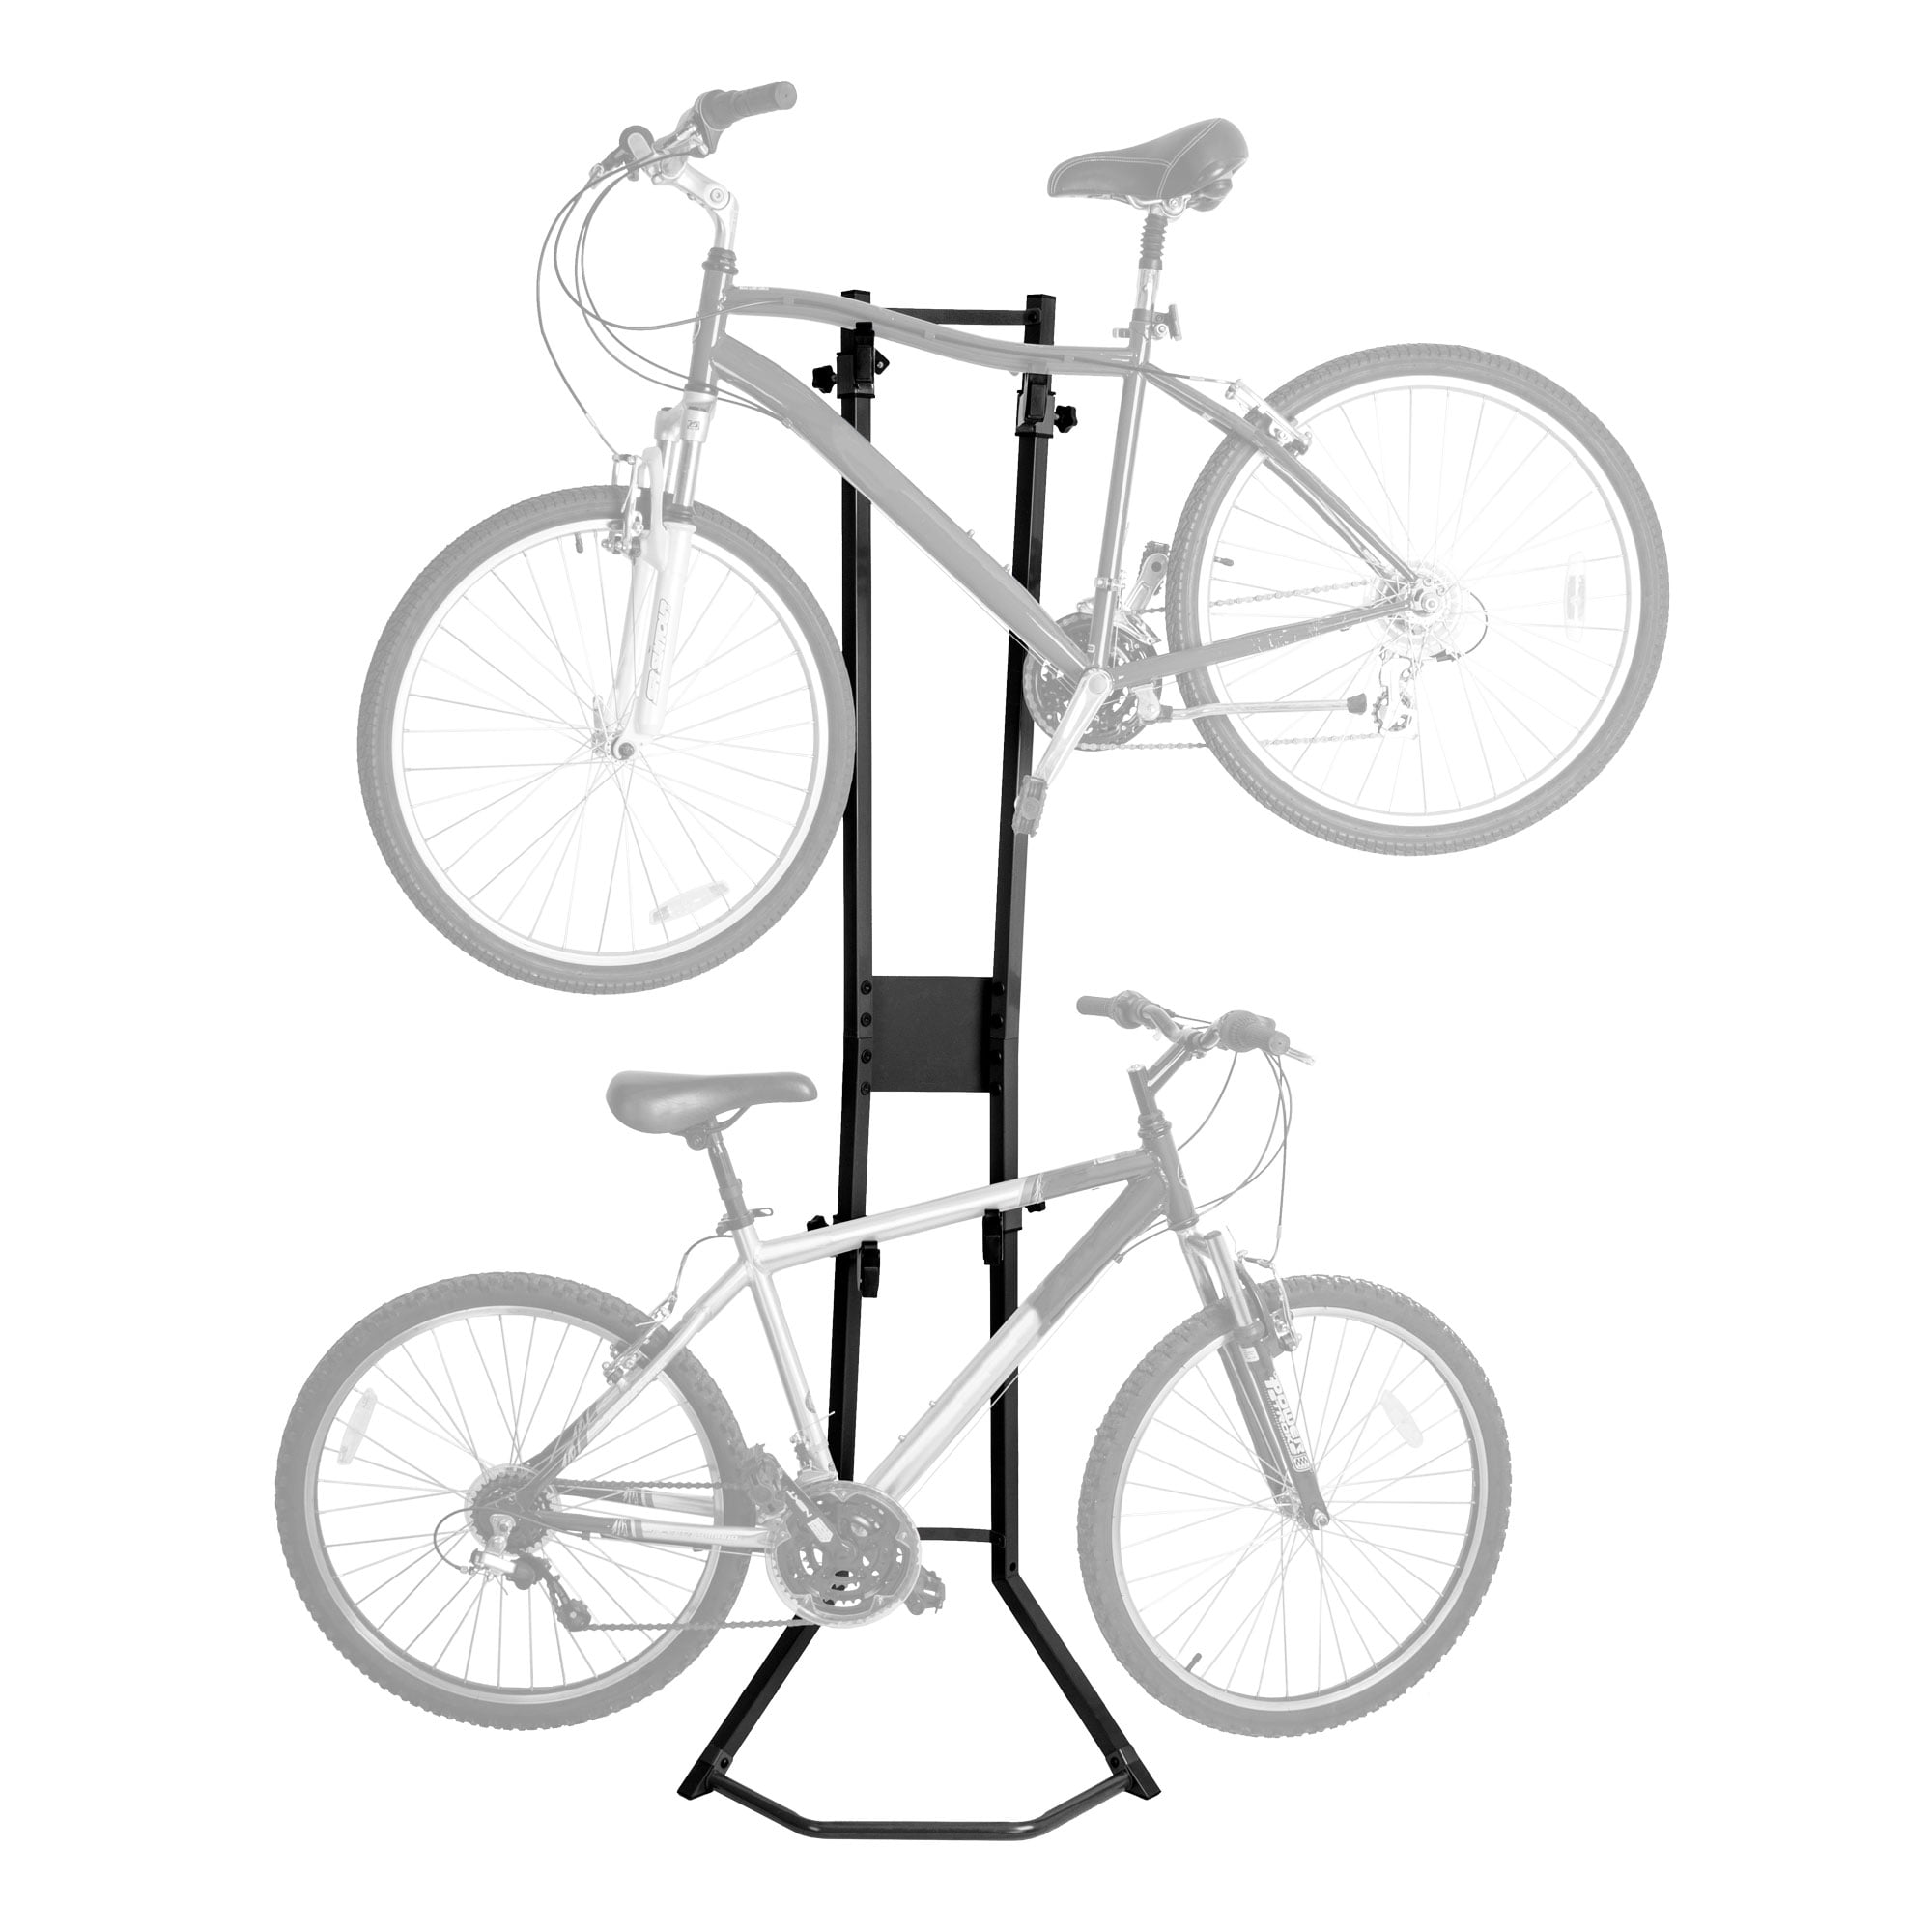 Bicycle Bike Floor Parking Storage Stand Display Rack Holder Fit 16-26" Range 